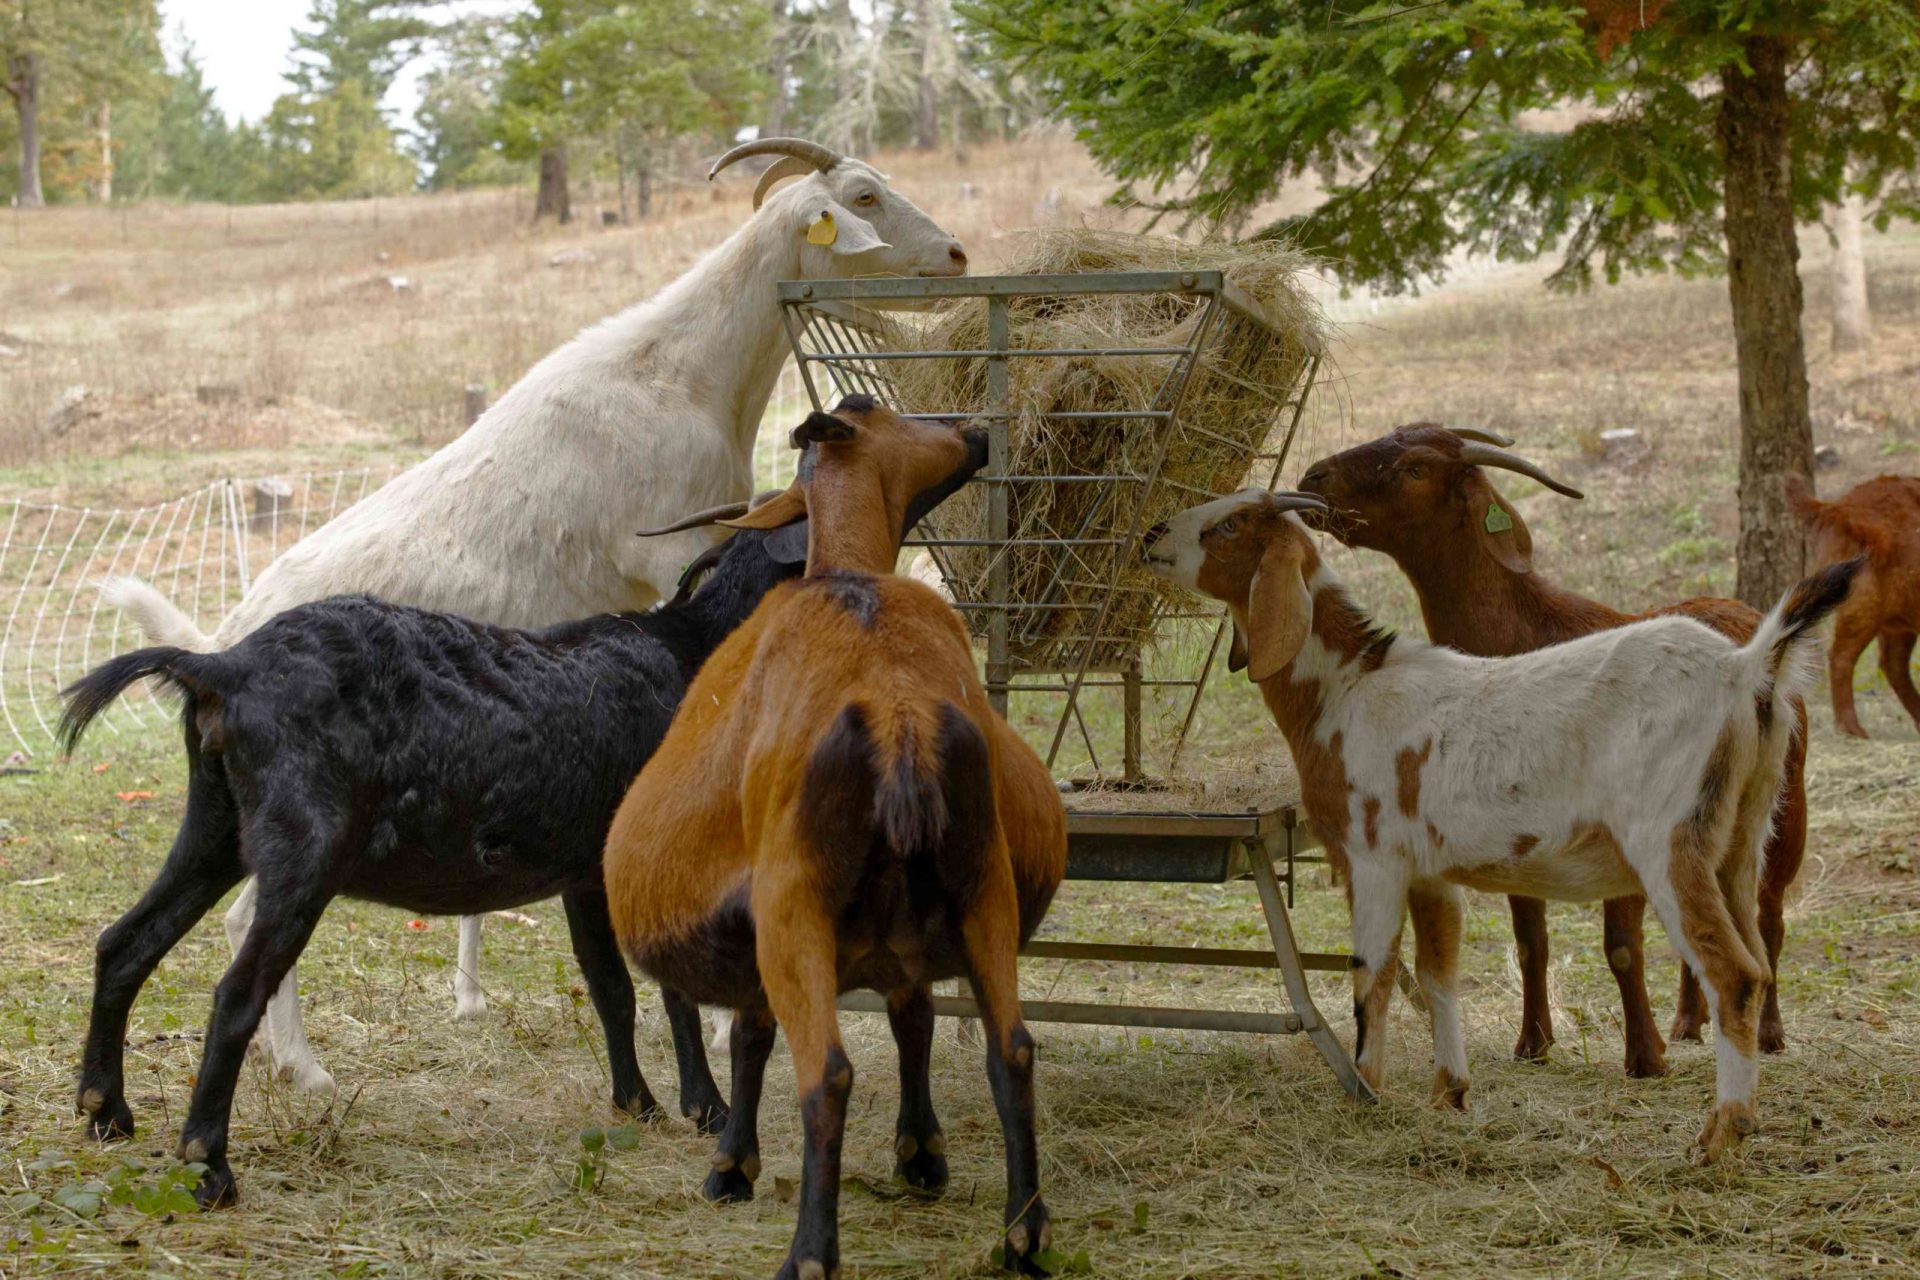 las cabras se levantan sobre las patas traseras para comer heno de un contenedor metálico elevado en el pasto